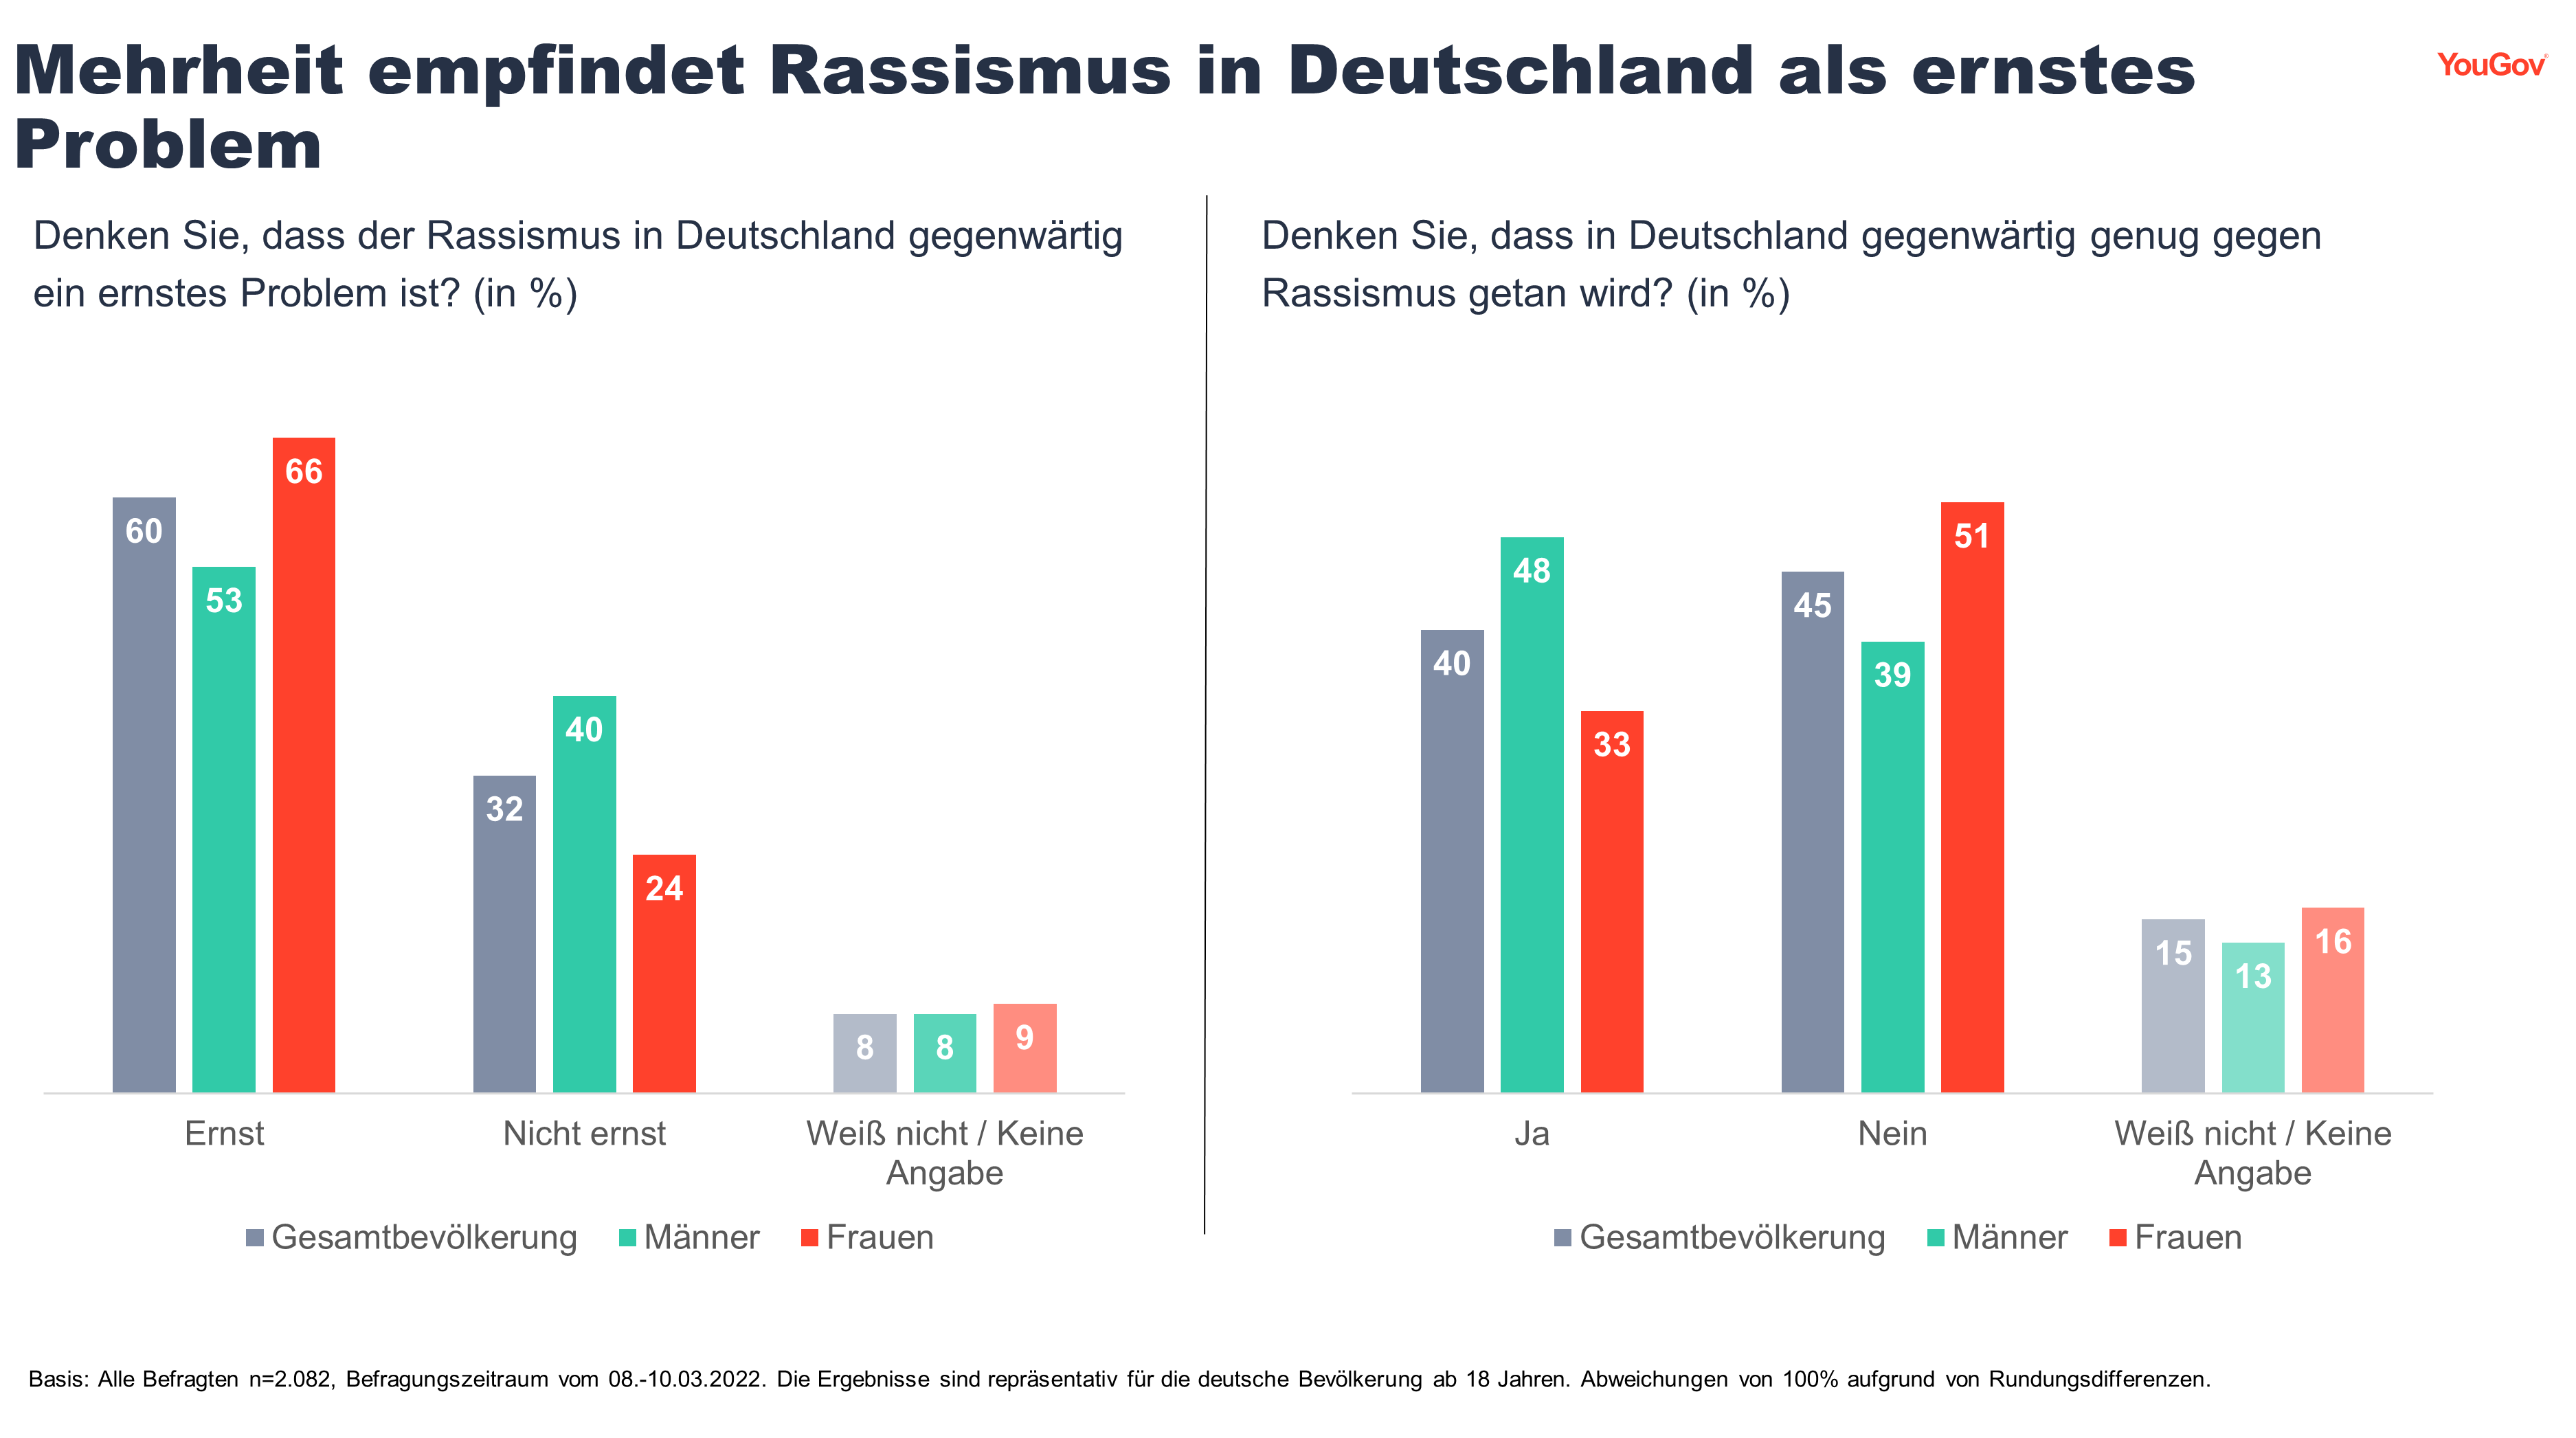 Für drei von fünf Deutschen ist Rassismus im eigenen Land ein ernstes Problem